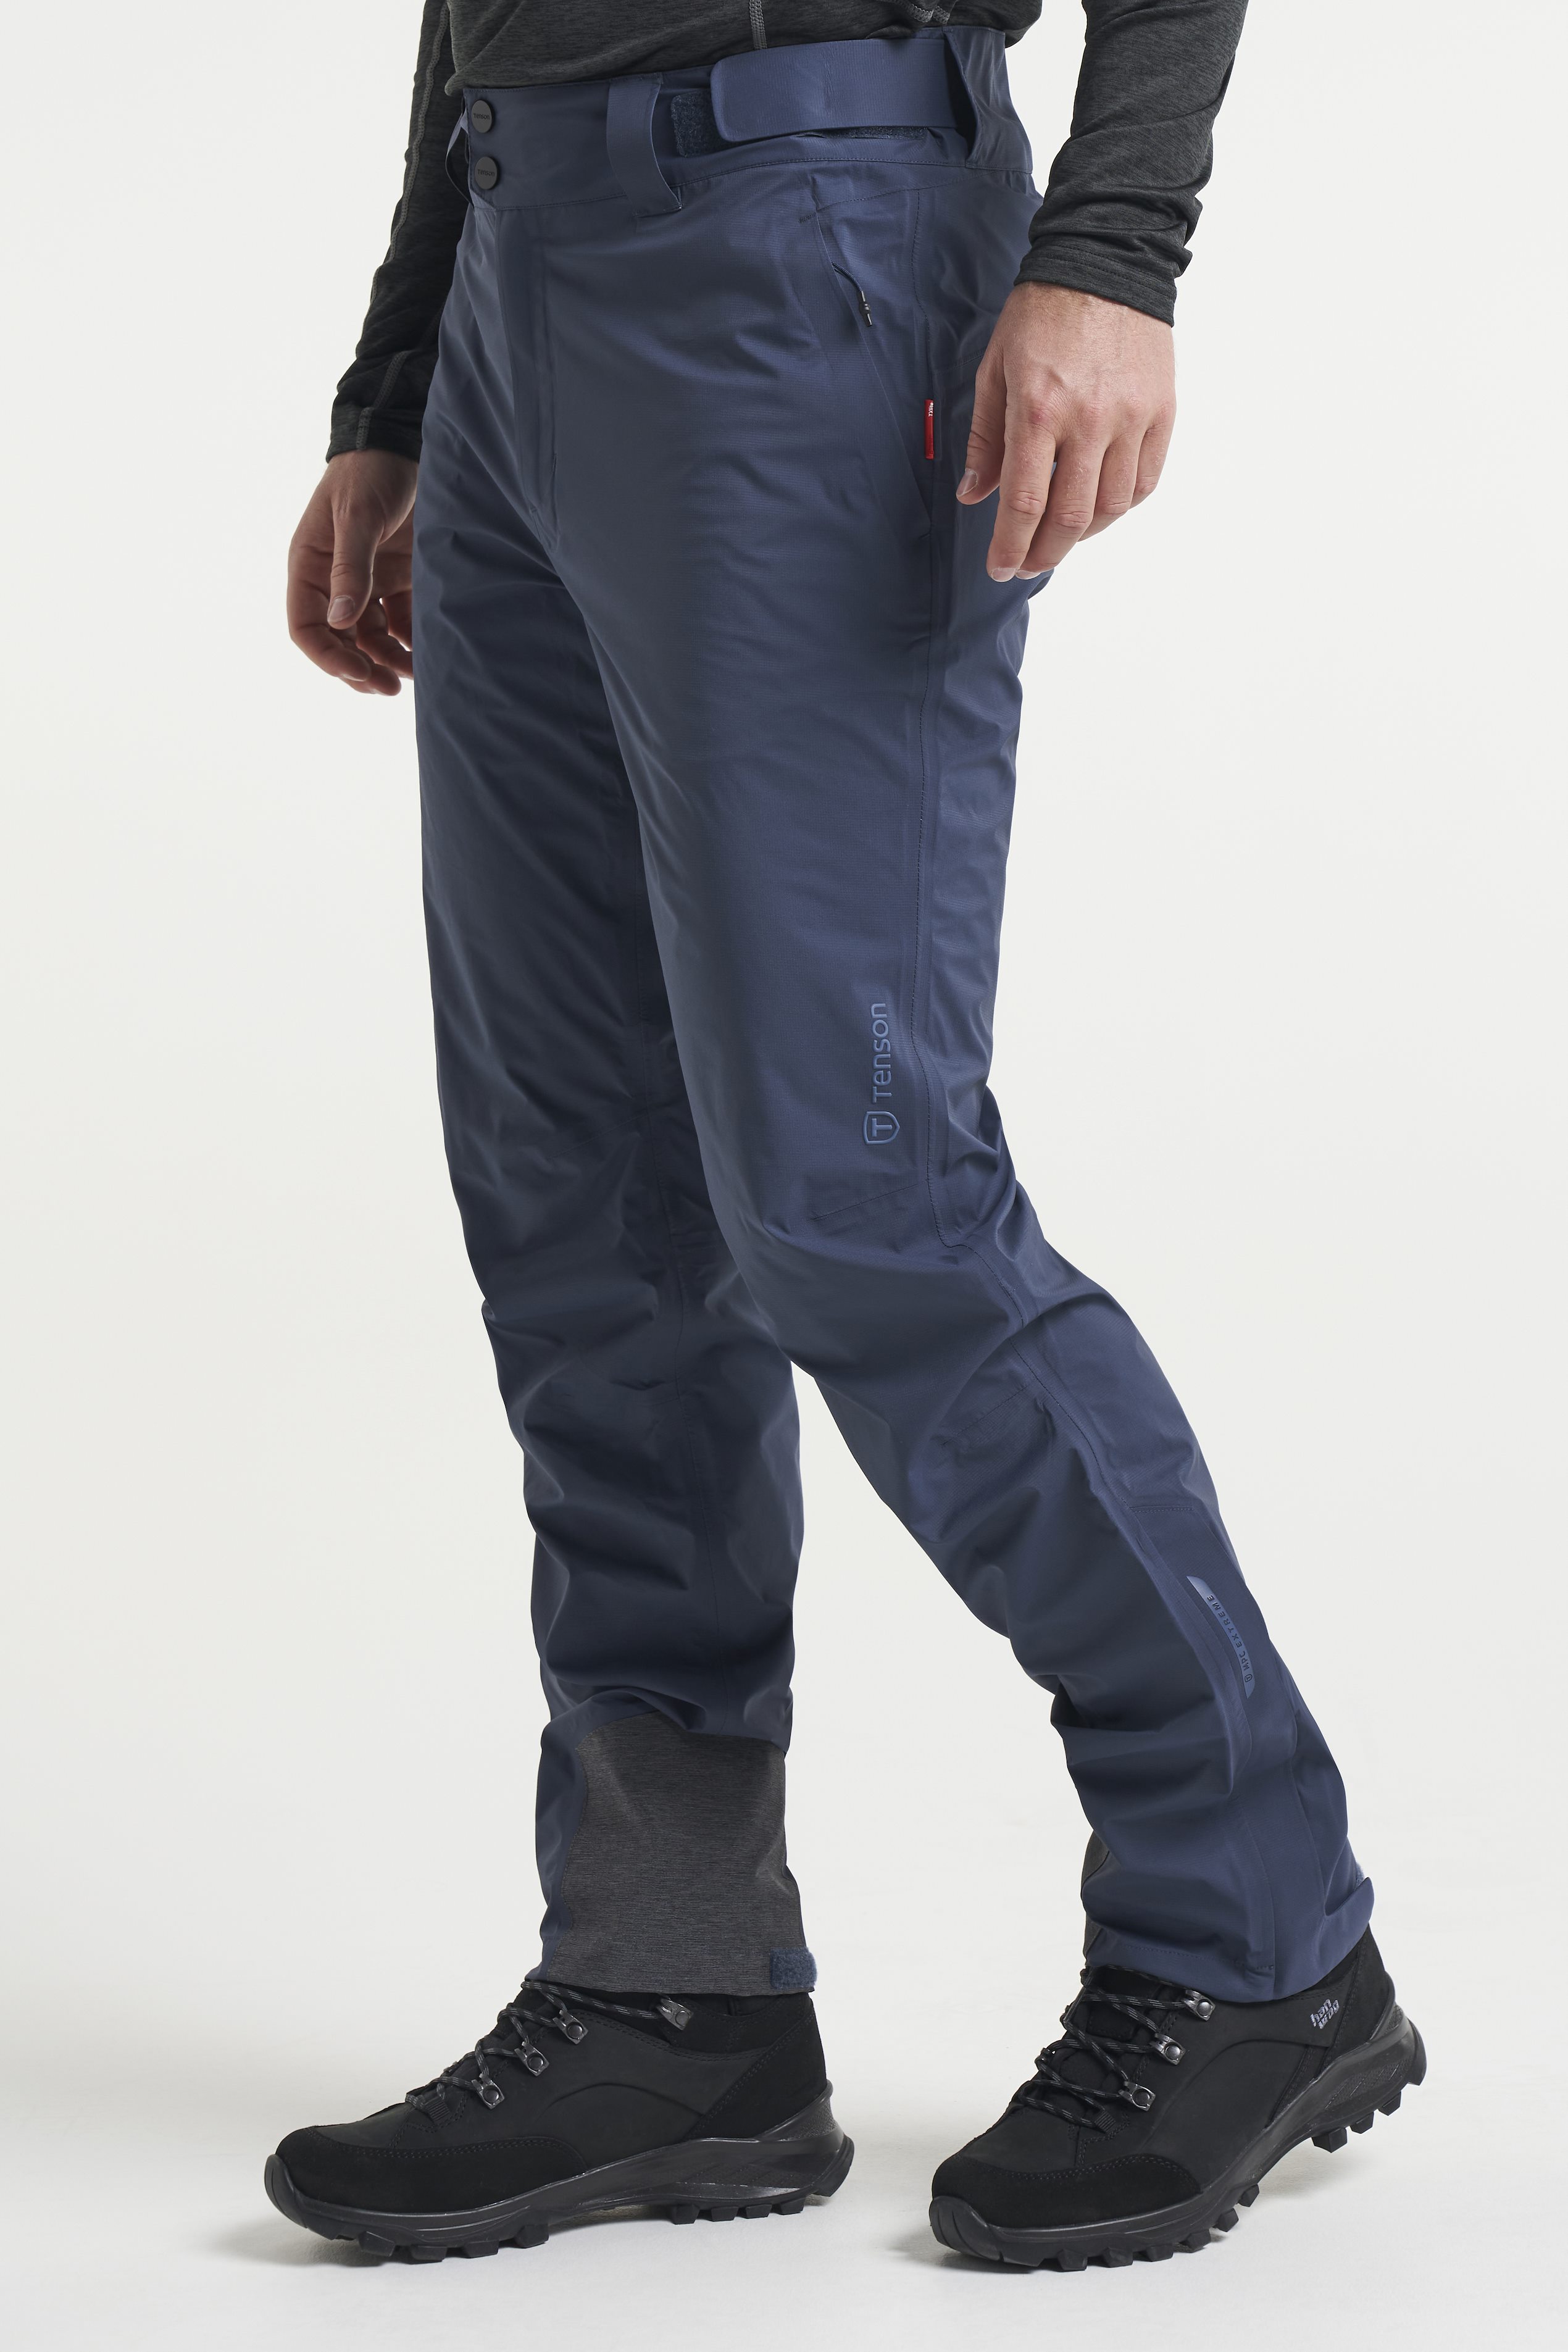 TXlite Skagway Pants  Waterproof trousers for men  Dark Blue